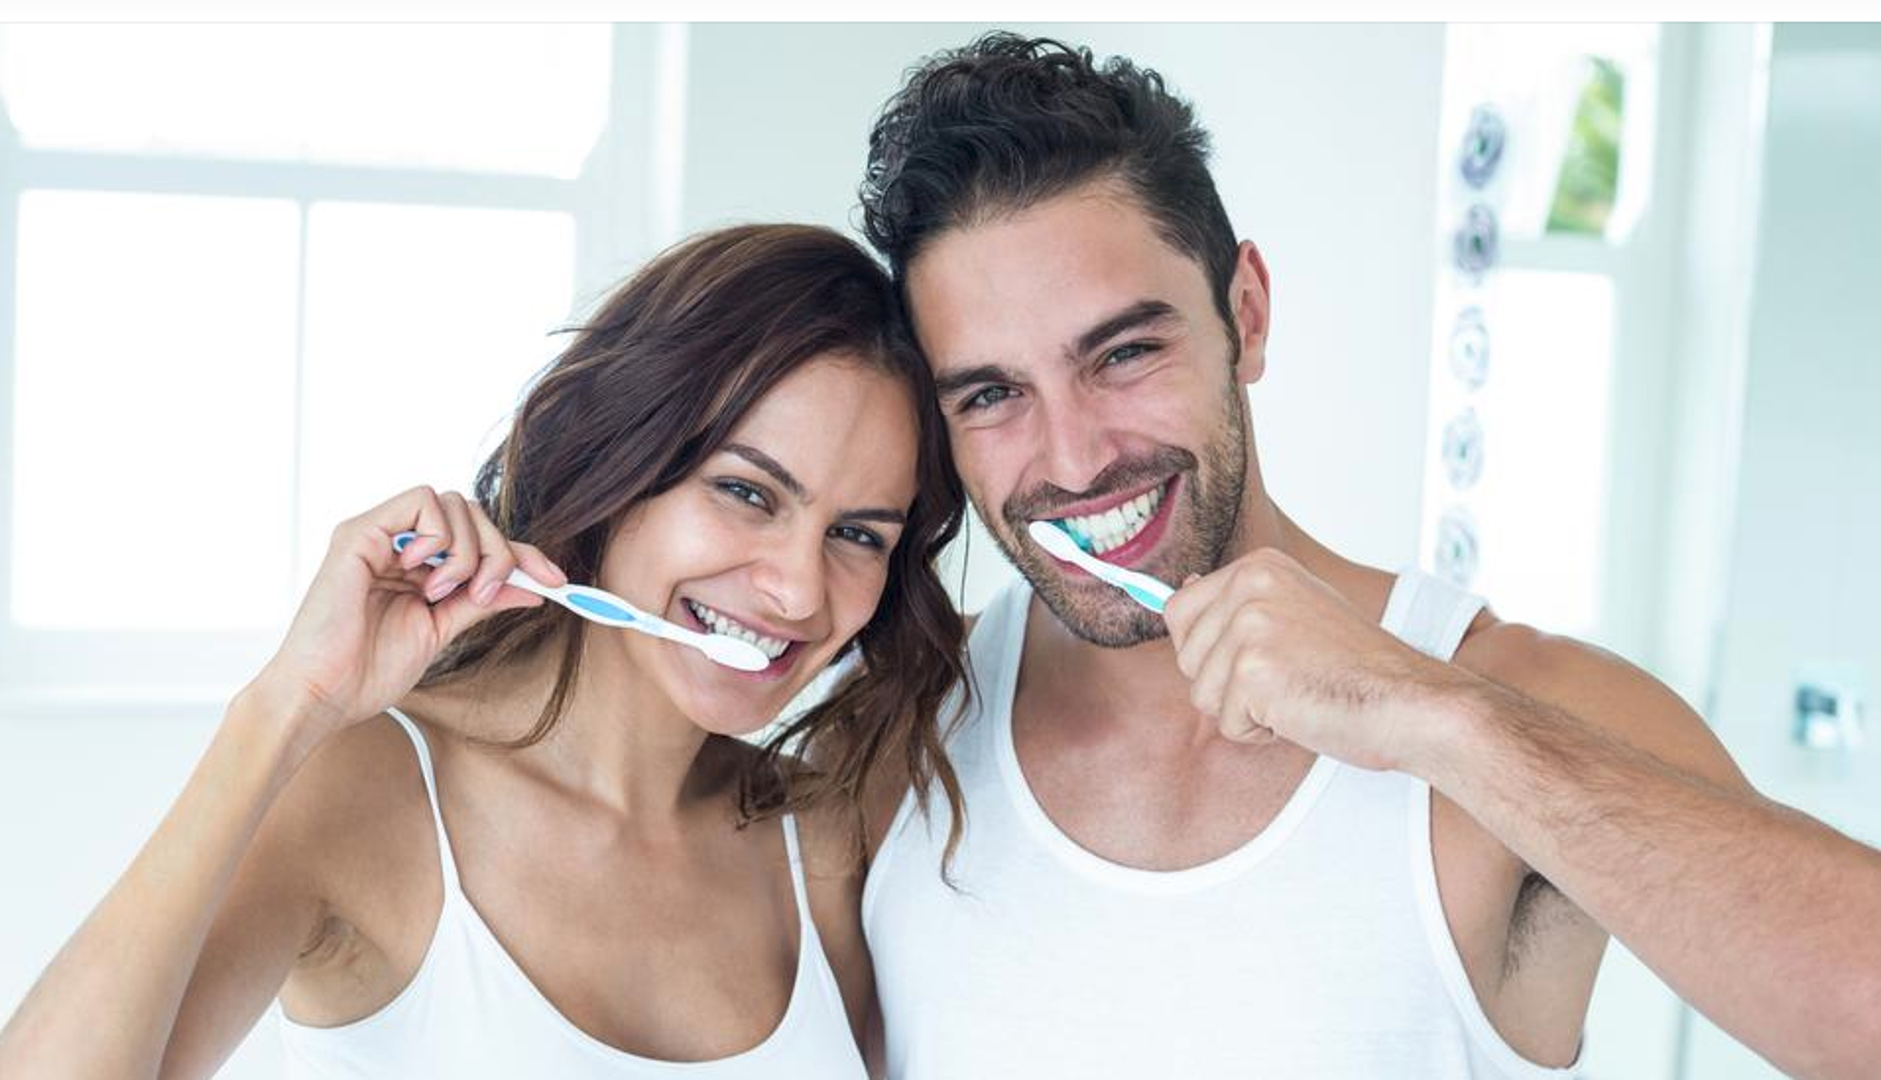 Ako želite malo izbijeliti zube, pomiješajte jednu žličicu sode bikarbone, malo soli i nekoliko kapi jabučnog octa. Iščetkajte zube otopinom, a zatim običnom pastom za zube. Ovo nemojte raditi više od jednom tjedno.